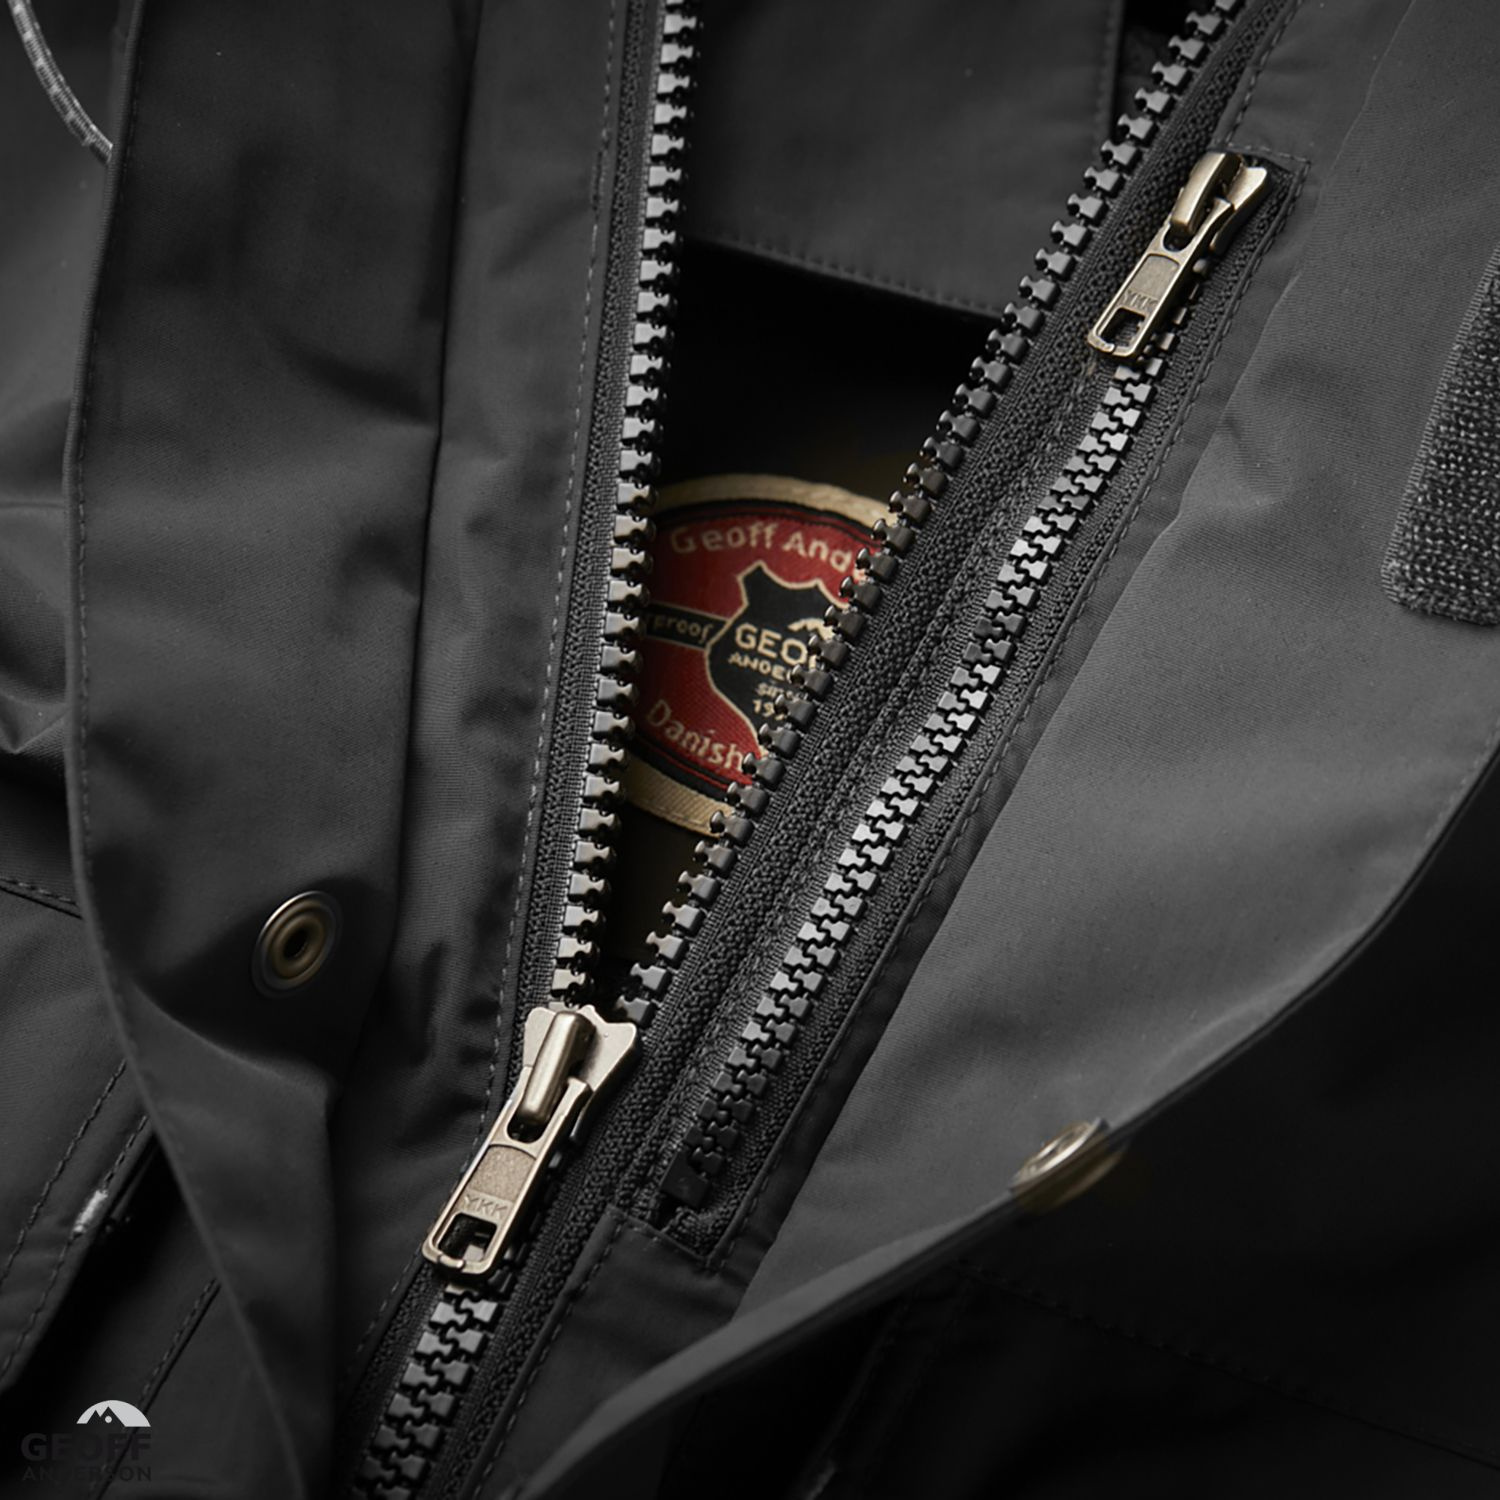 Geoff Anderson Raptor 6 Jacket Black Edition